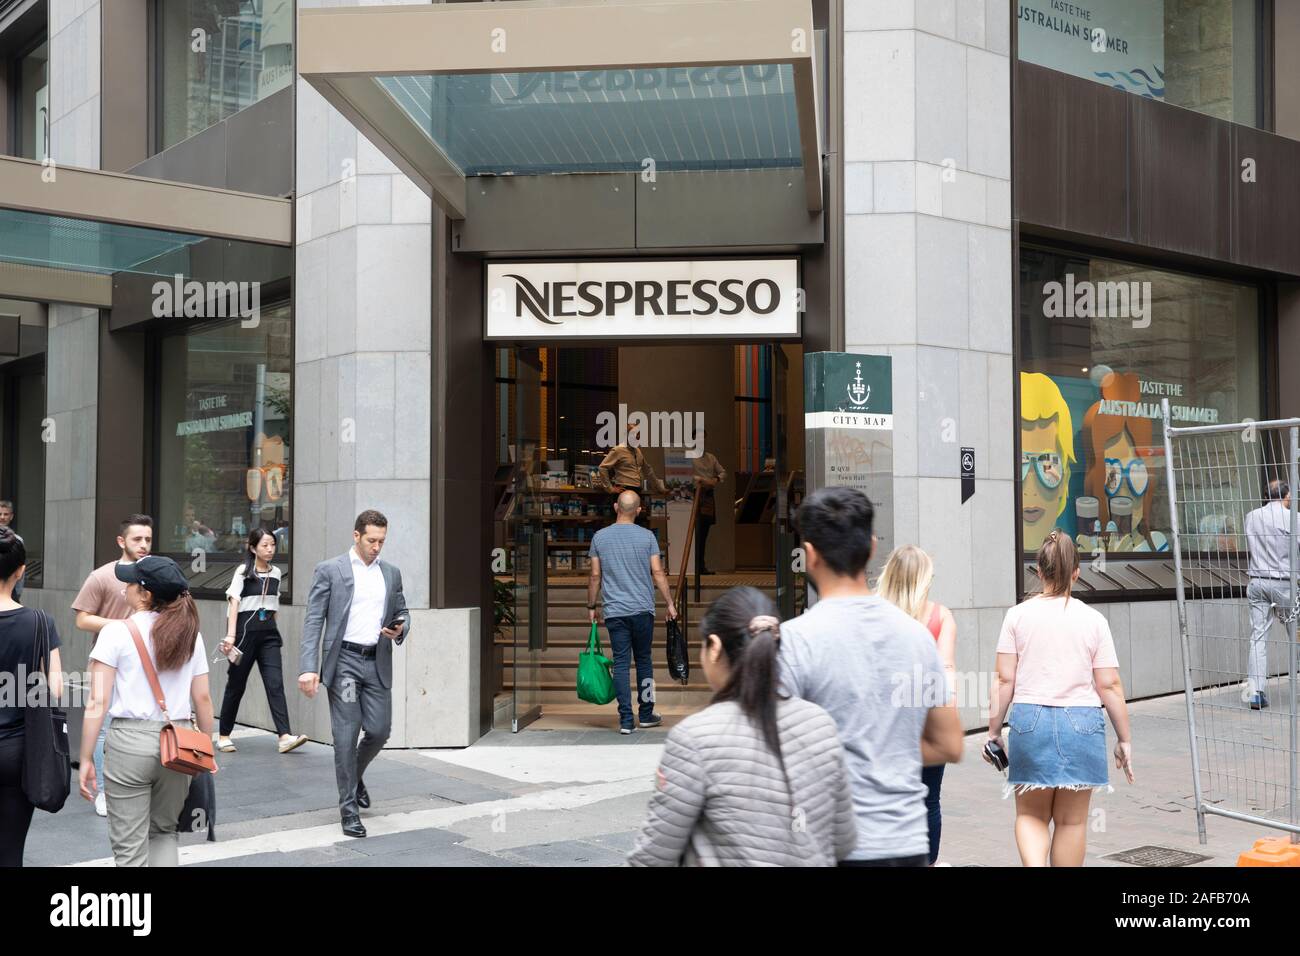 Nespresso coffee shop in Sydney george street,New South Wales,Australia  Stock Photo - Alamy